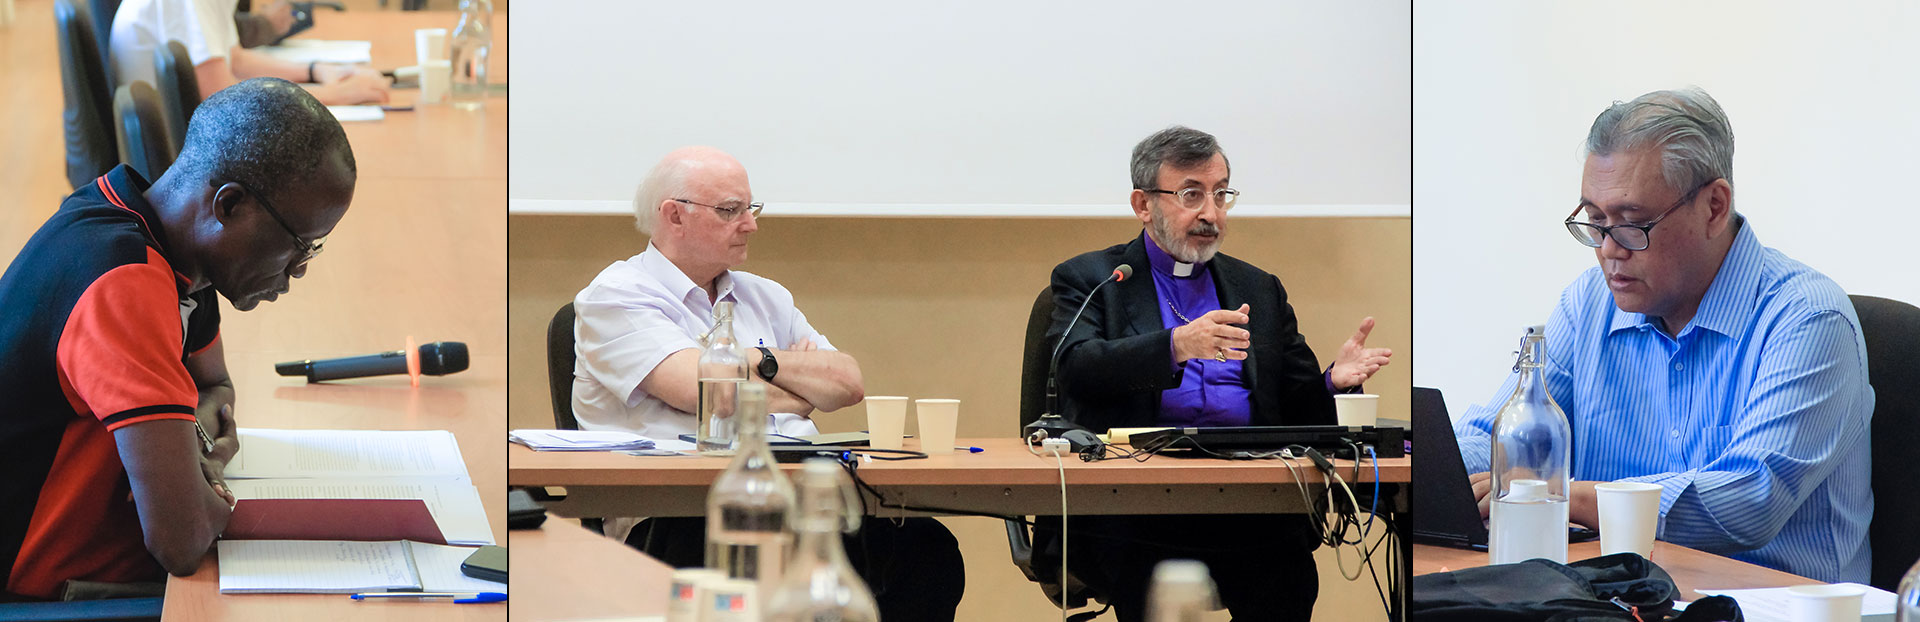 El ecumenismo y el diálogo interreligioso están aún en la agenda